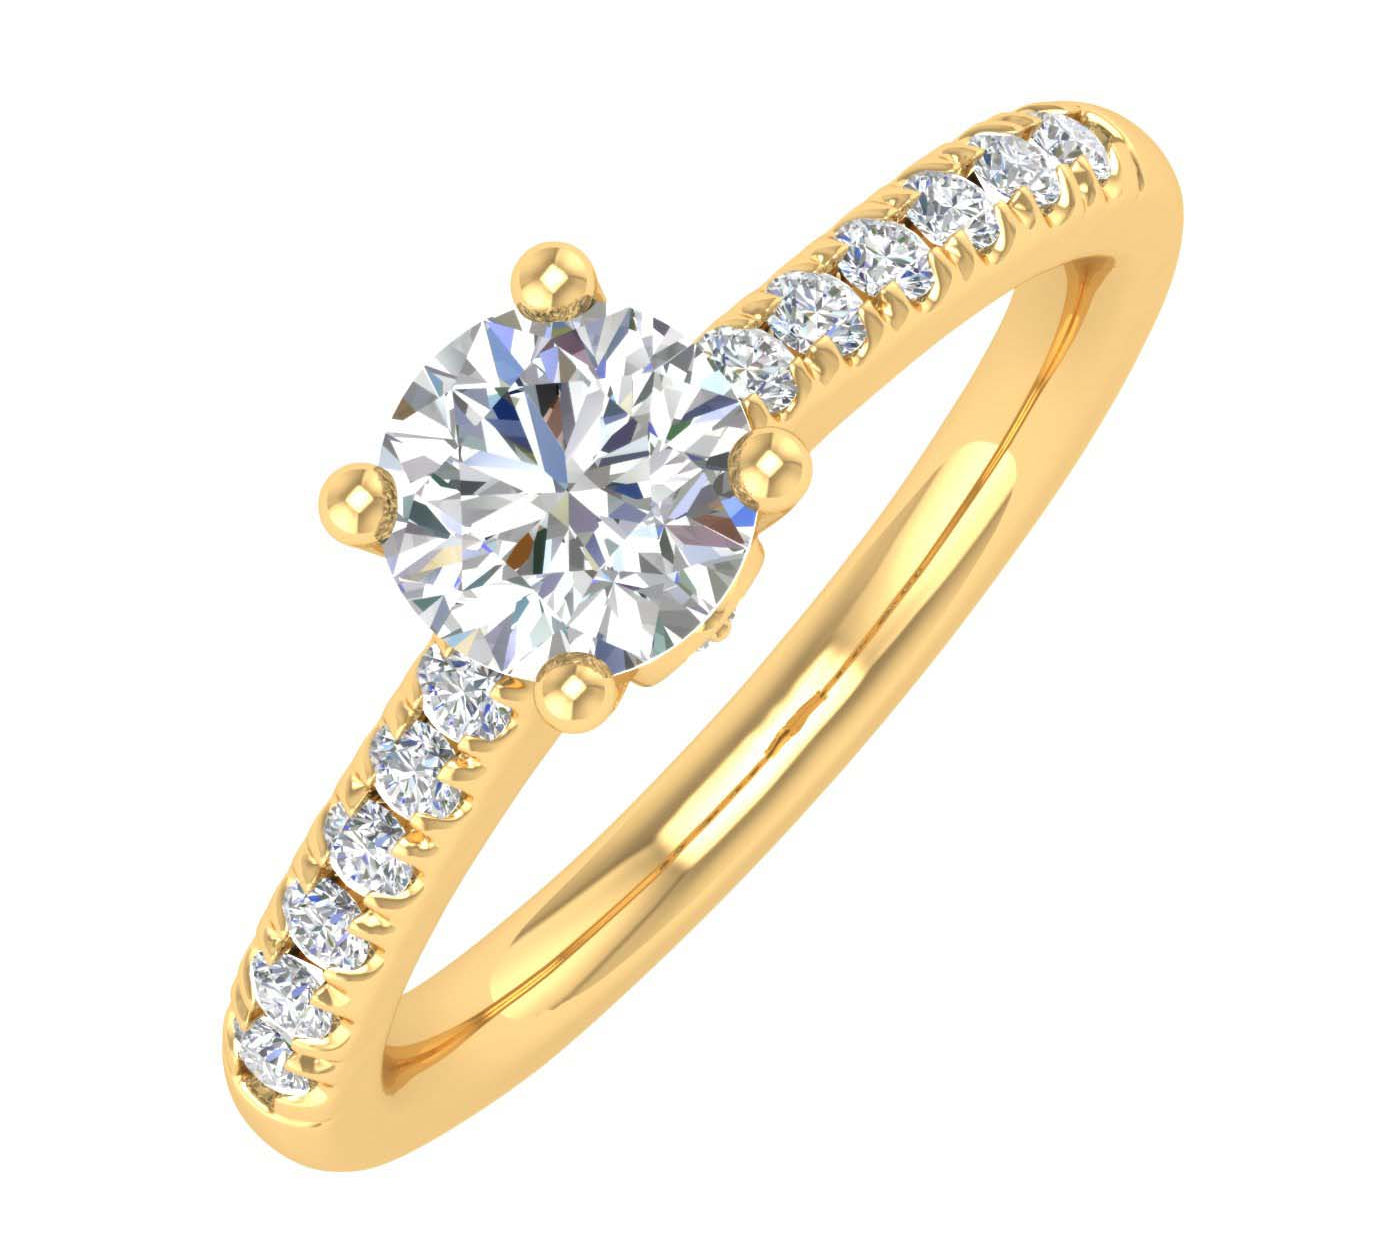 1/2 Carat Diamond Engagement Ring Band in Gold - IGI Certified